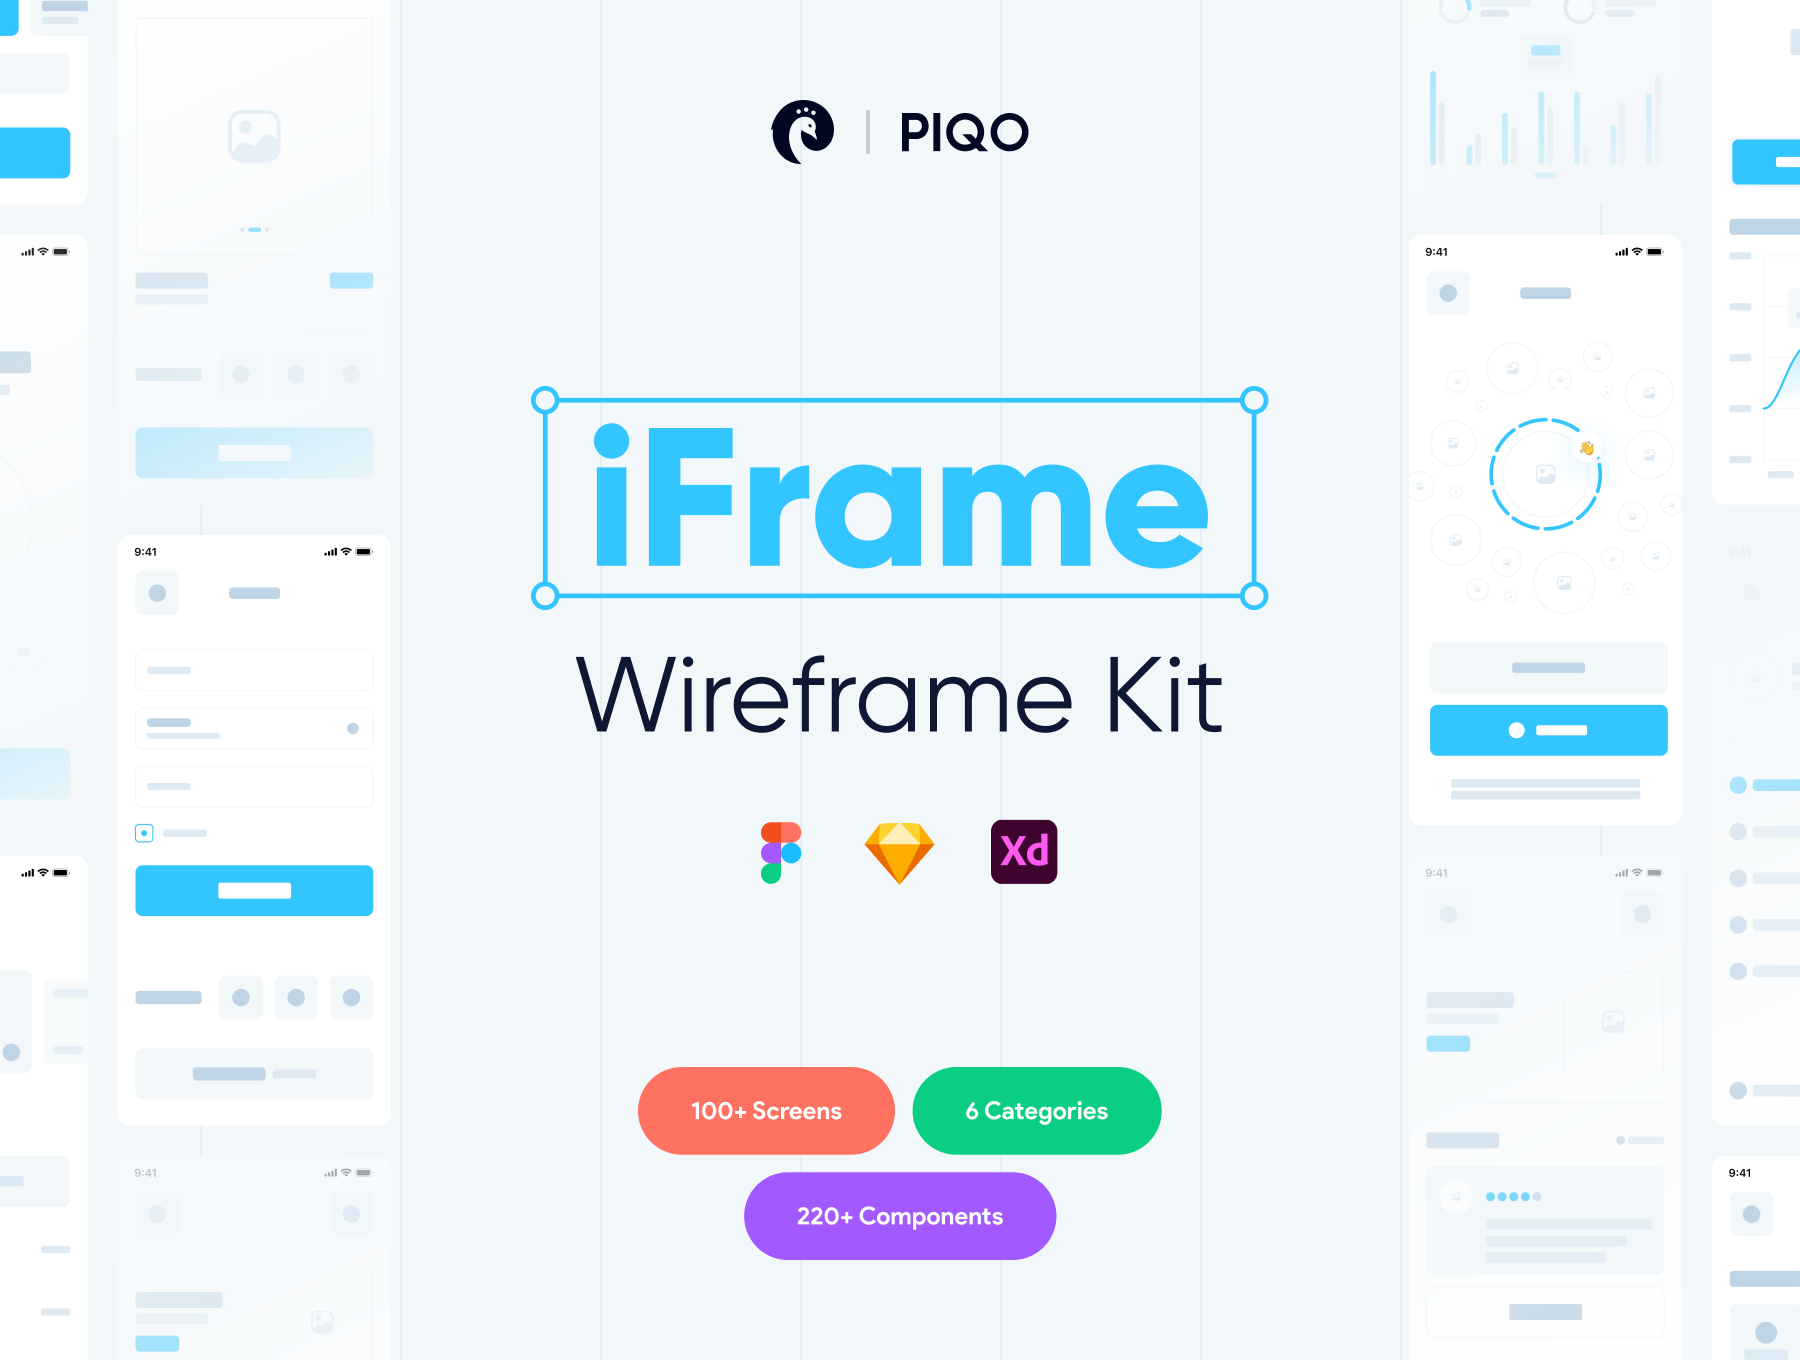 iFrame Wireframe Kit